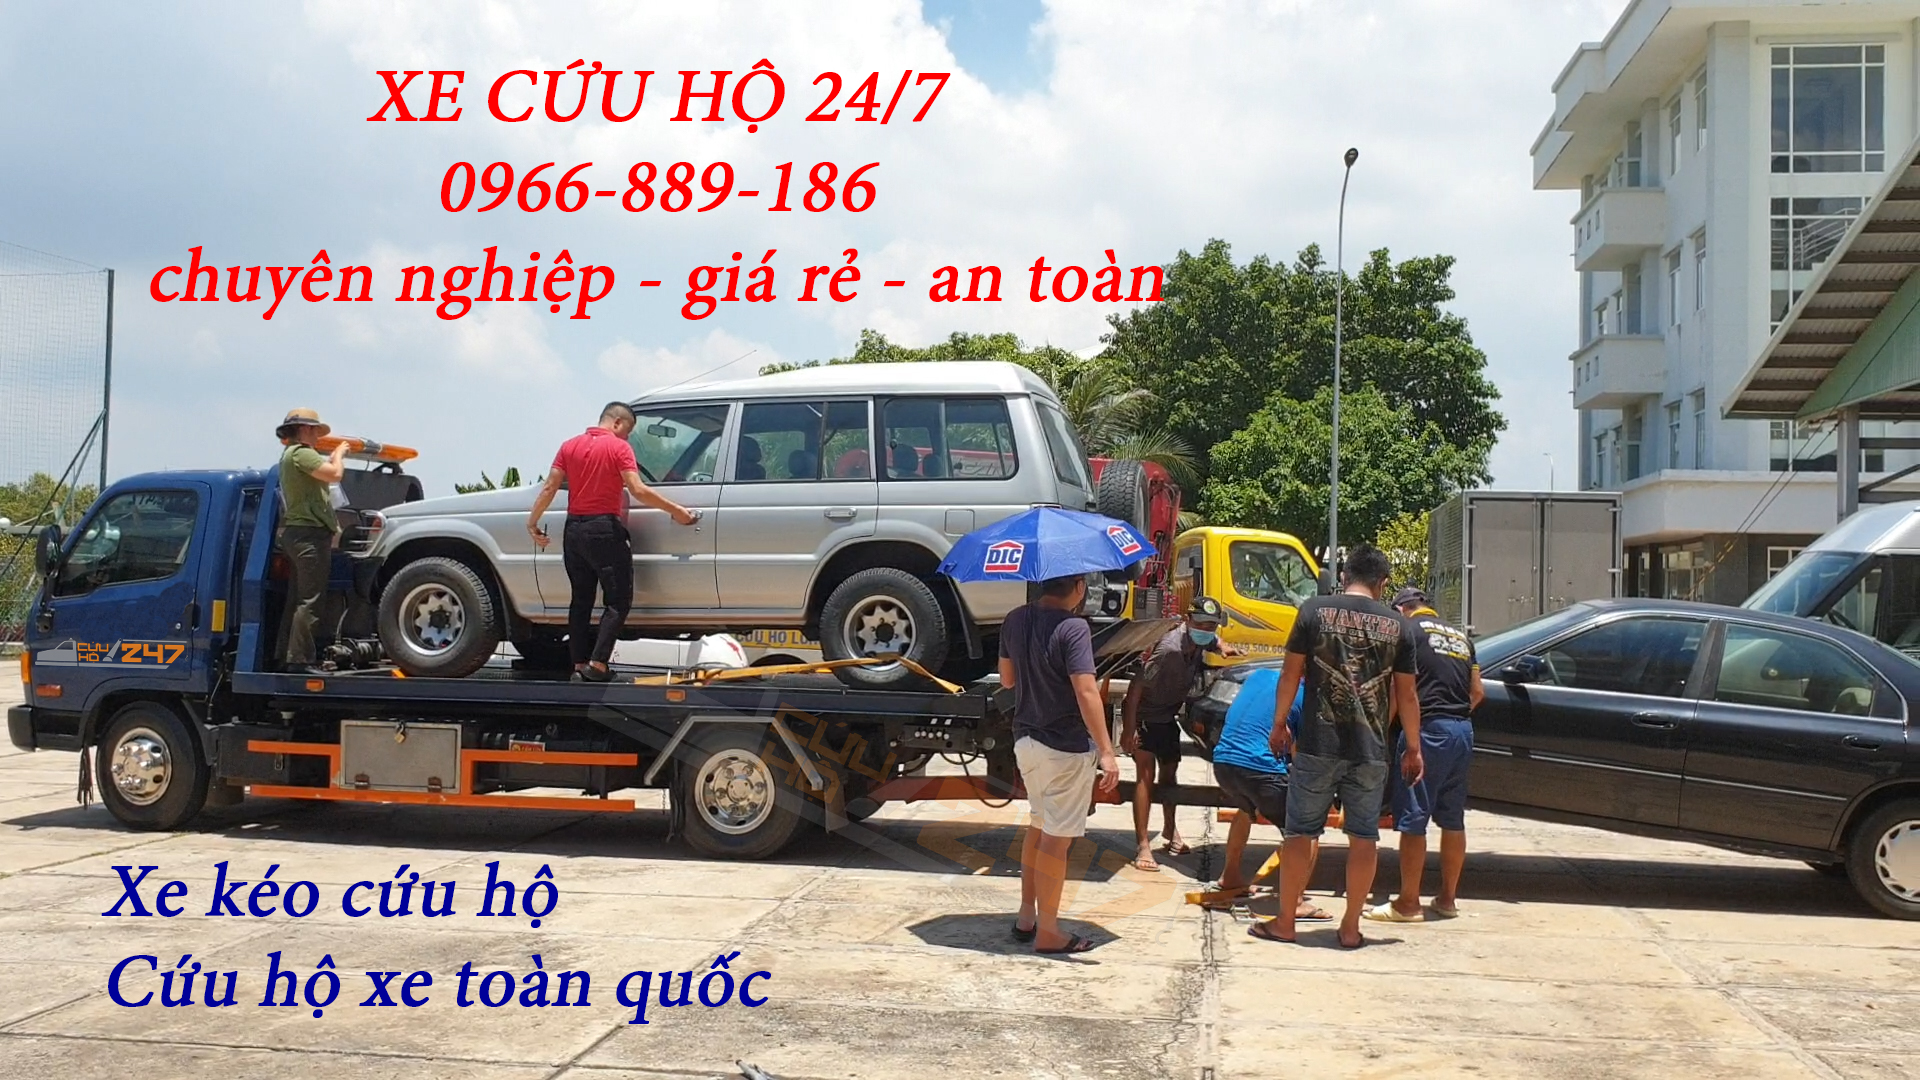 [Cứu hộ Bến Lức - Long An] Cứu hộ long an, cứu hộ xe ô tô Sài Gòn - miền Tây chuyên nghiệp, nhanh chóng và an toàn